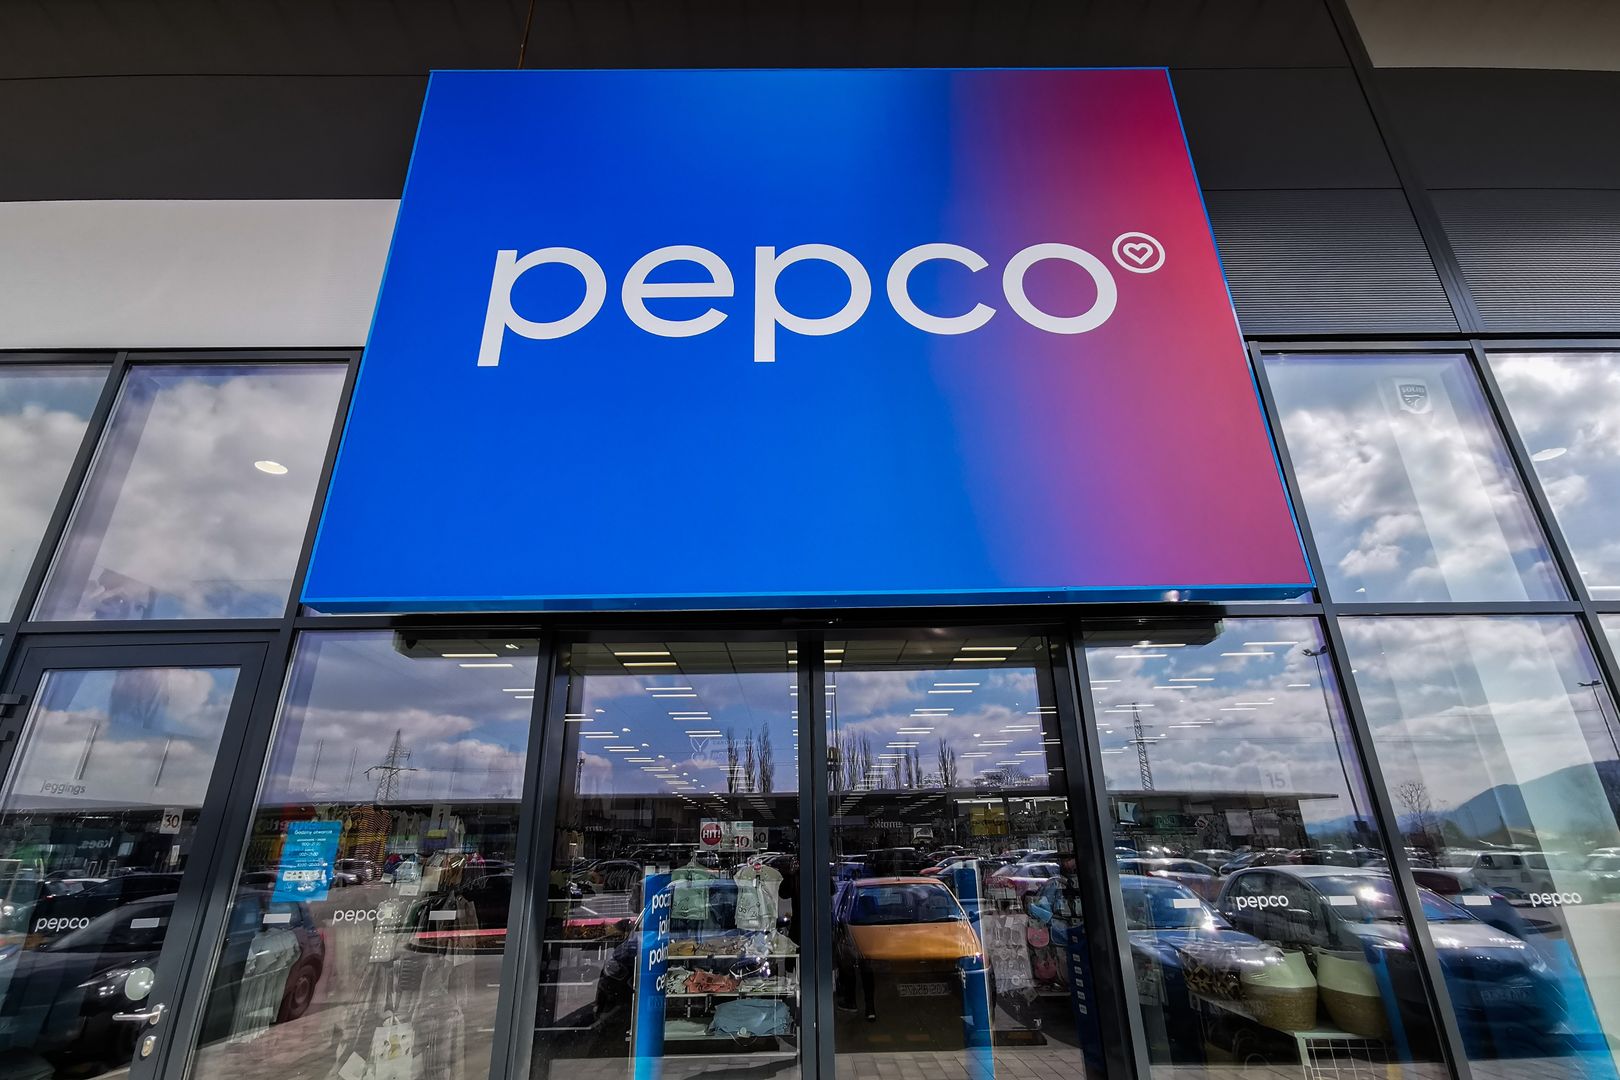 Promocje Pepco wgniatają w fotel. Szokująco niskie ceny